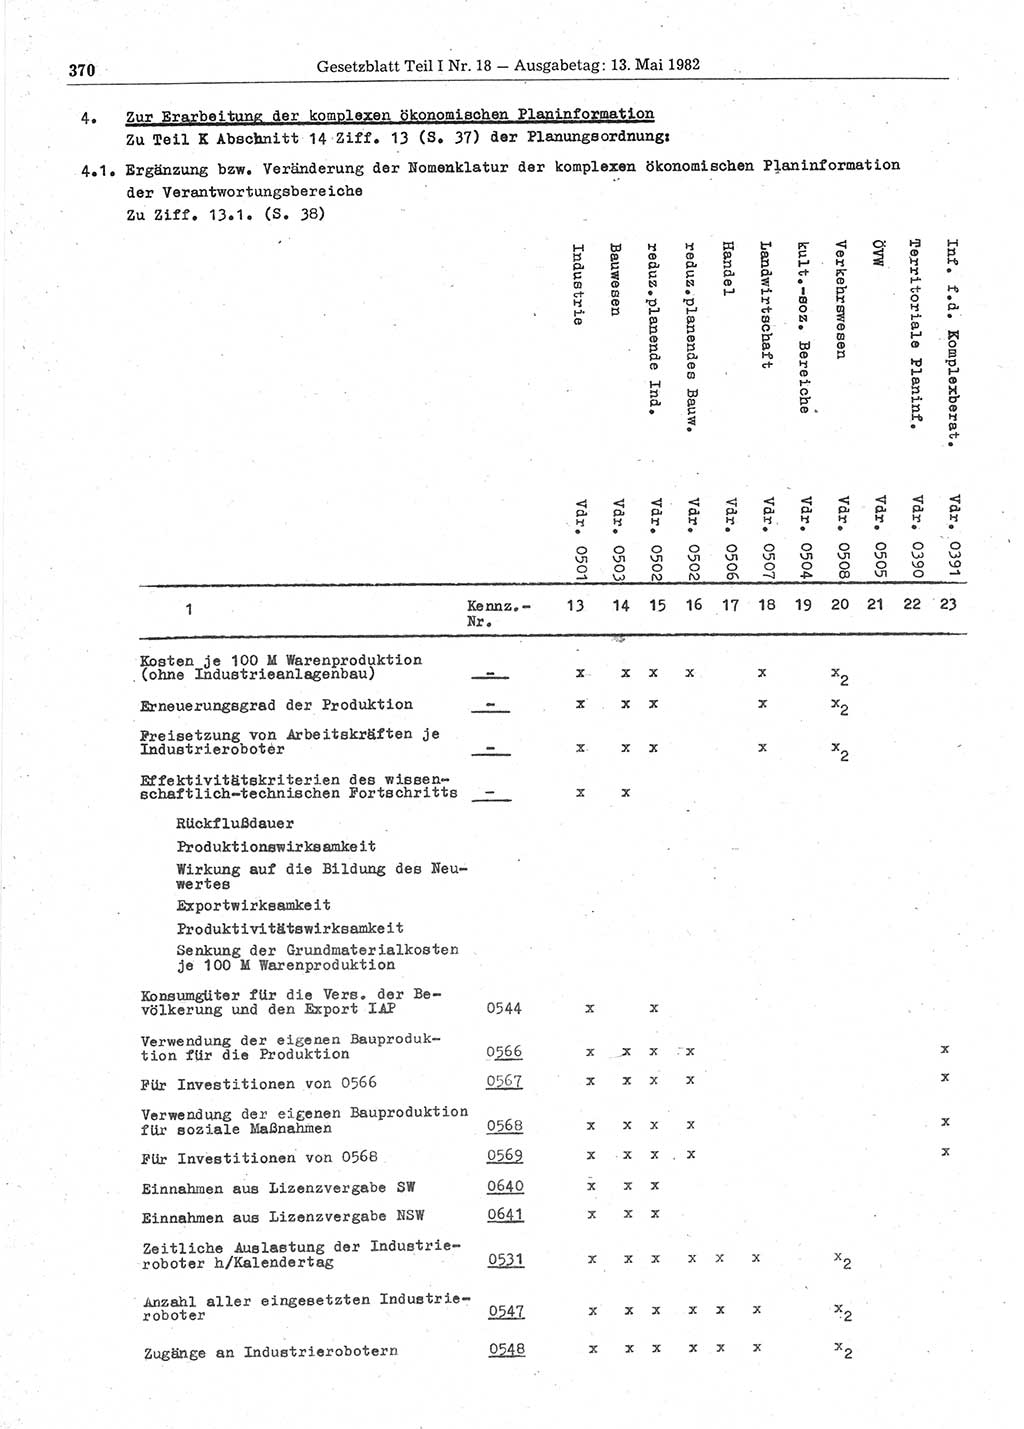 Gesetzblatt (GBl.) der Deutschen Demokratischen Republik (DDR) Teil Ⅰ 1982, Seite 370 (GBl. DDR Ⅰ 1982, S. 370)